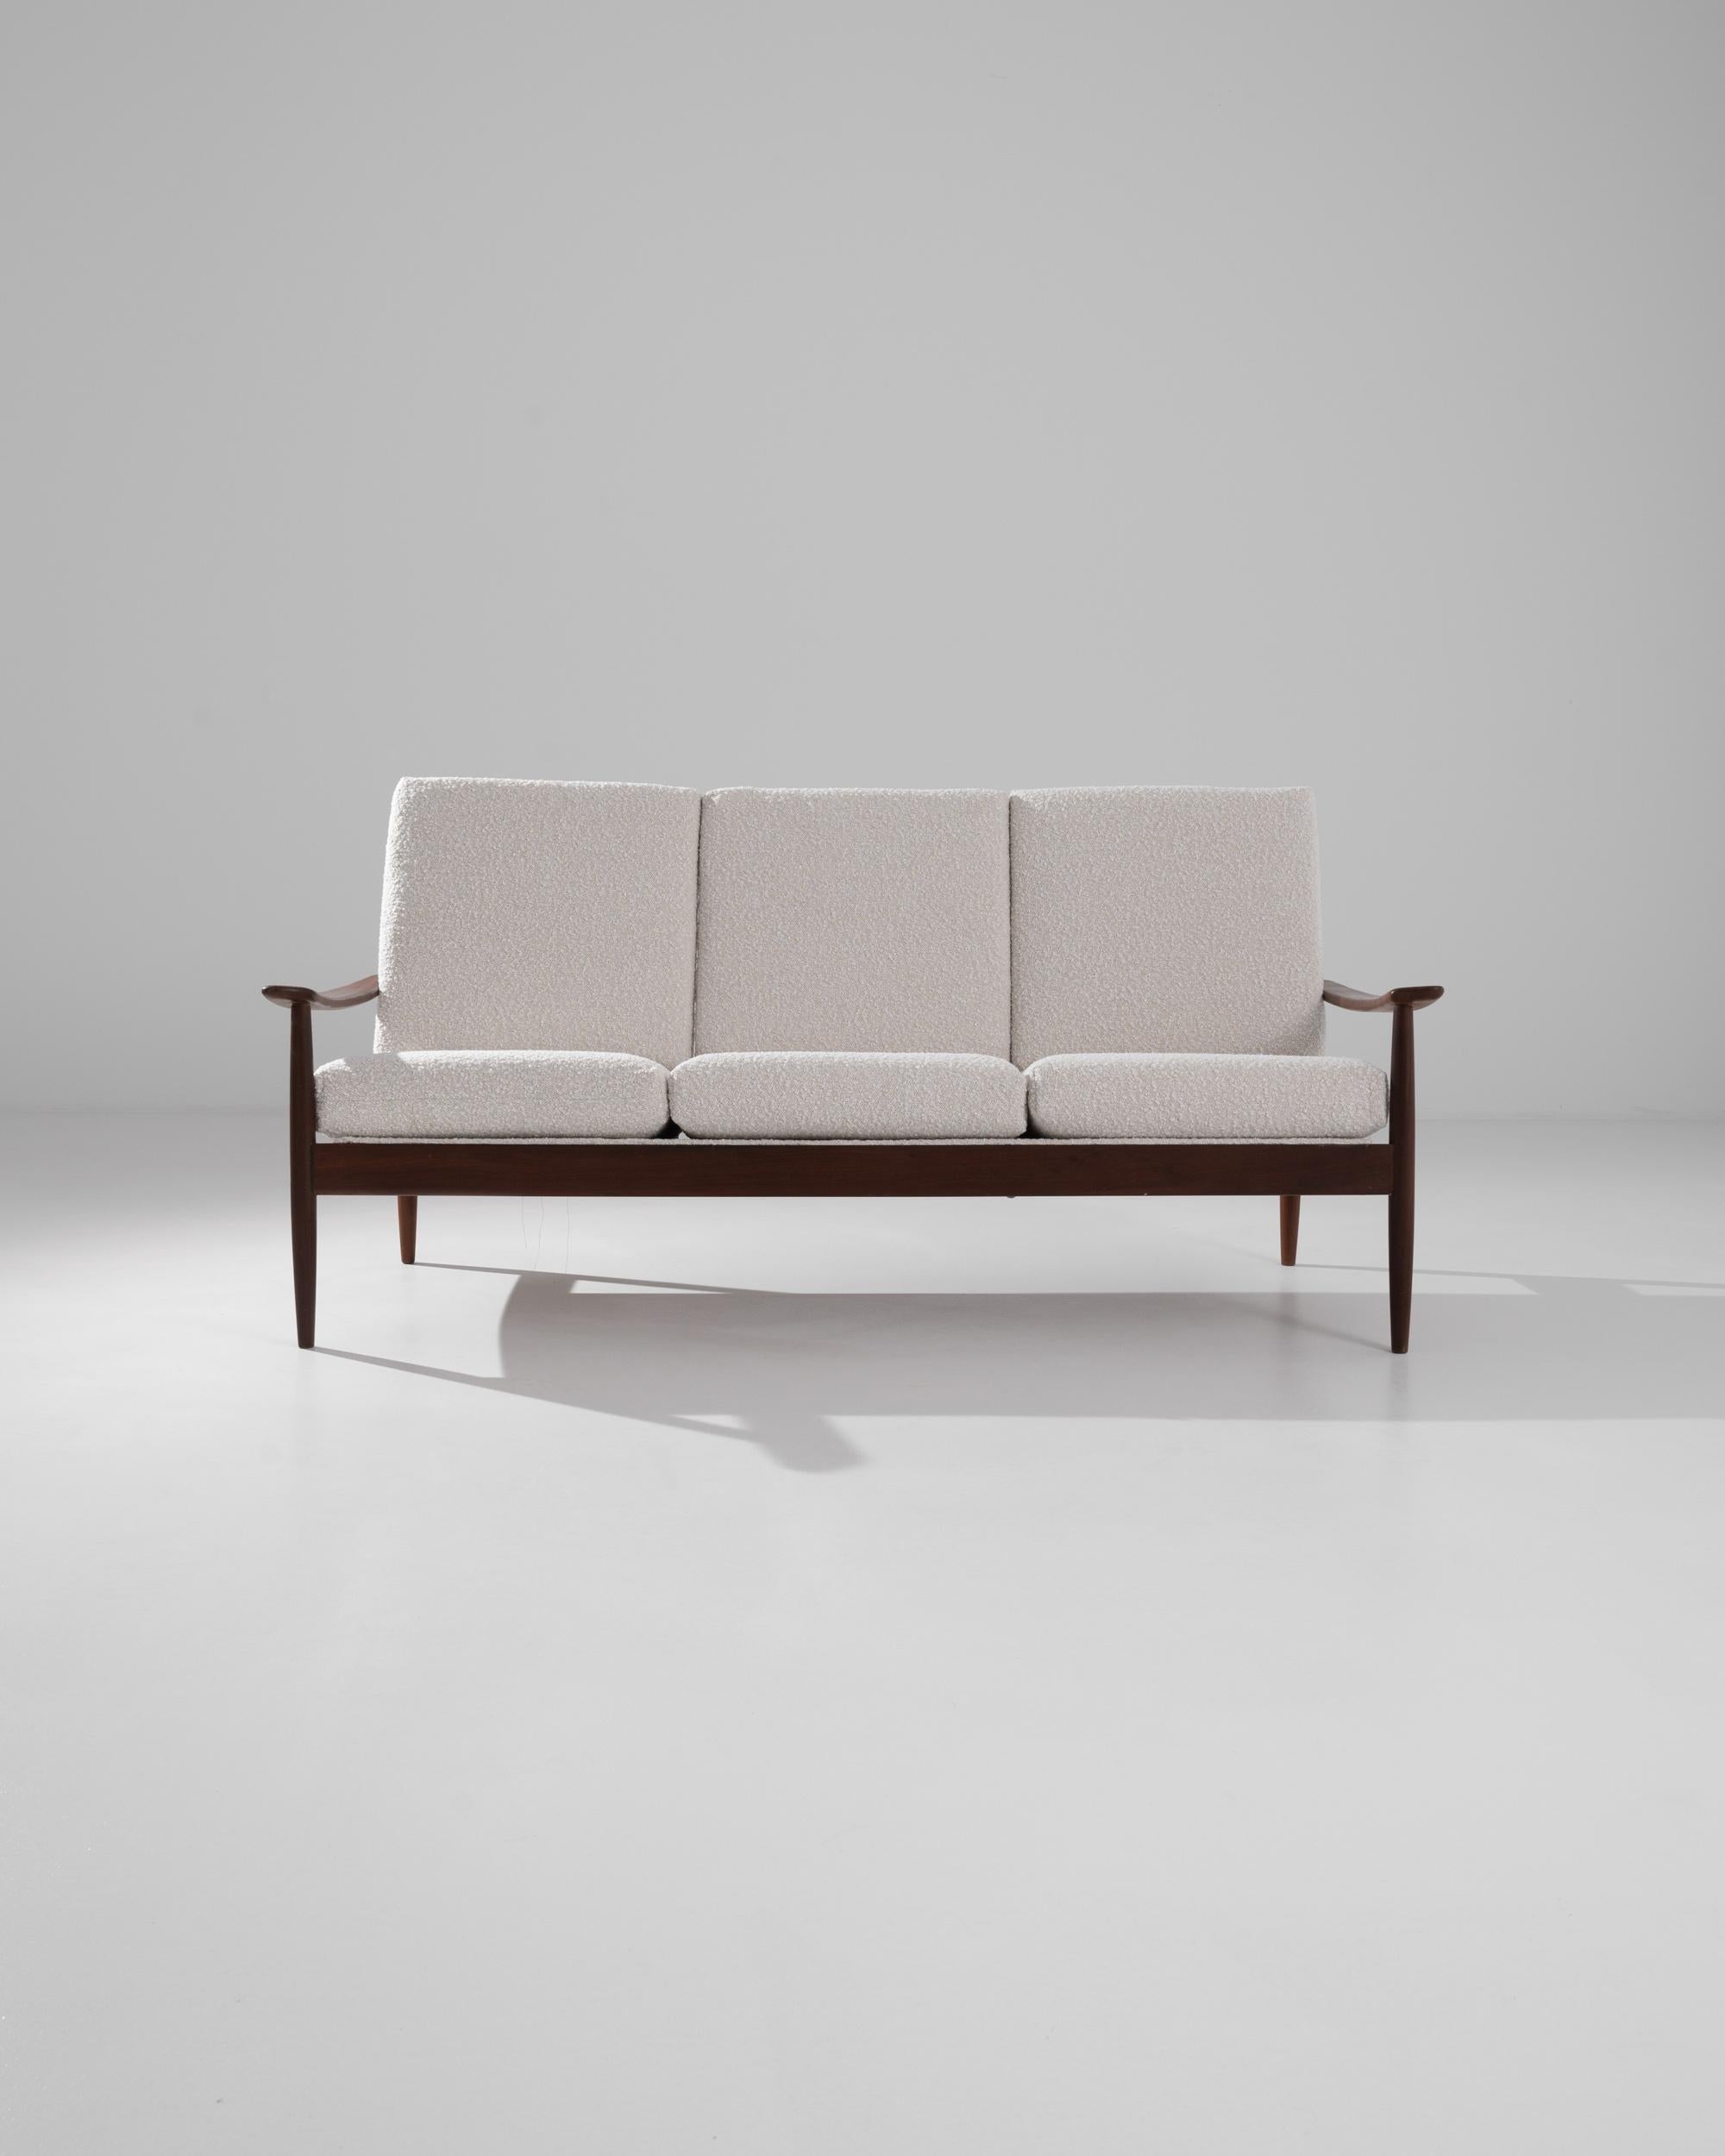 Léger et élégant, ce canapé en bois des années 1960 incarne la simplicité sans effort du mobilier moderne danois. La silhouette est épurée mais gracieuse : les pieds fuselés élancés créent une position stable, tandis que la courbe fluide de